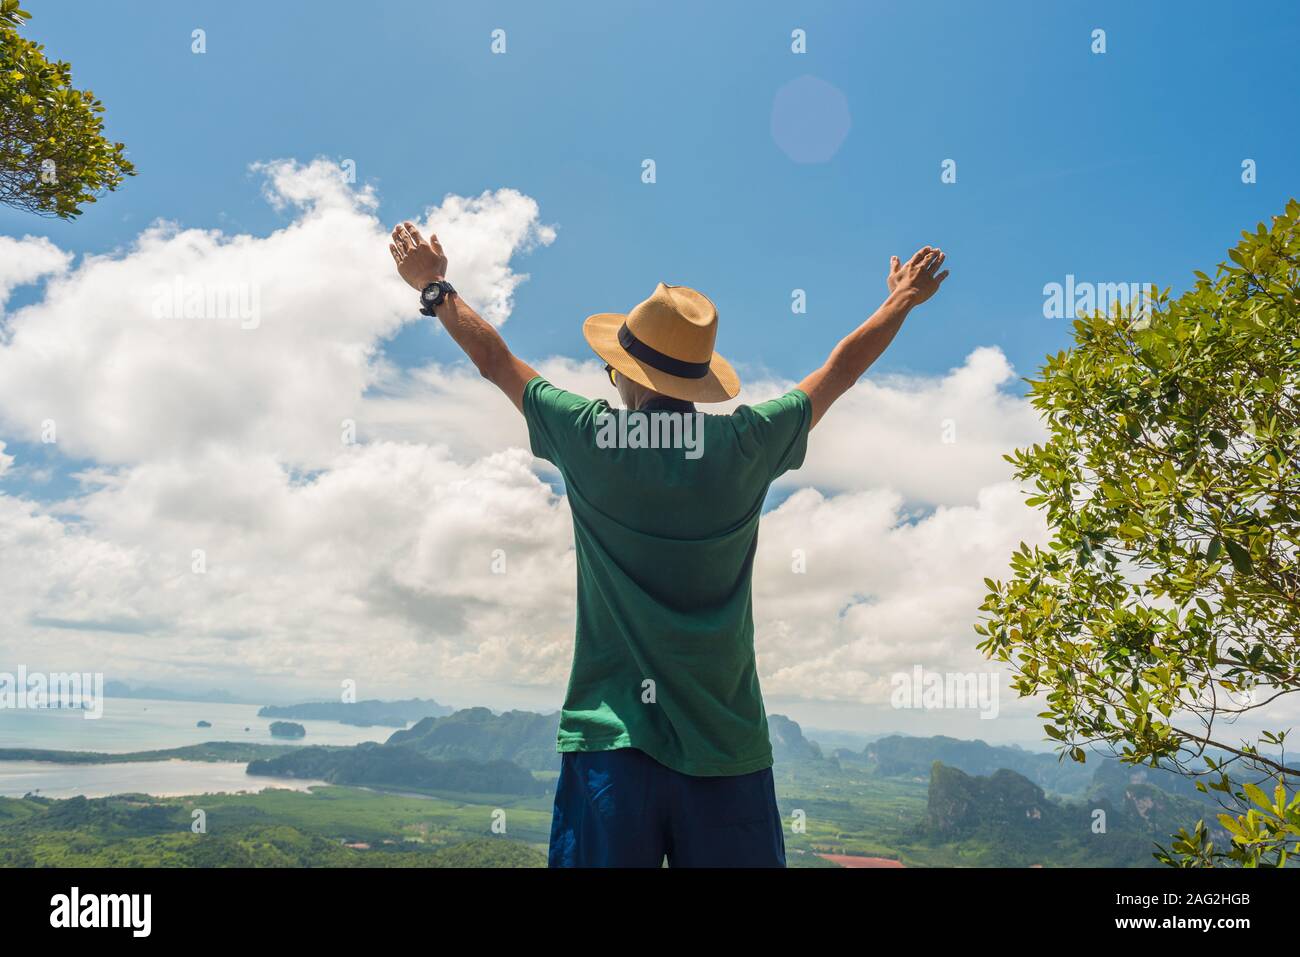 Magazzino immagine: una persona con le mani alzate in alto si erge sulla cima della montagna. Concetto di successo, uno stile di vita sano, in armonia con la natura e viaggiare in vacanza Foto Stock